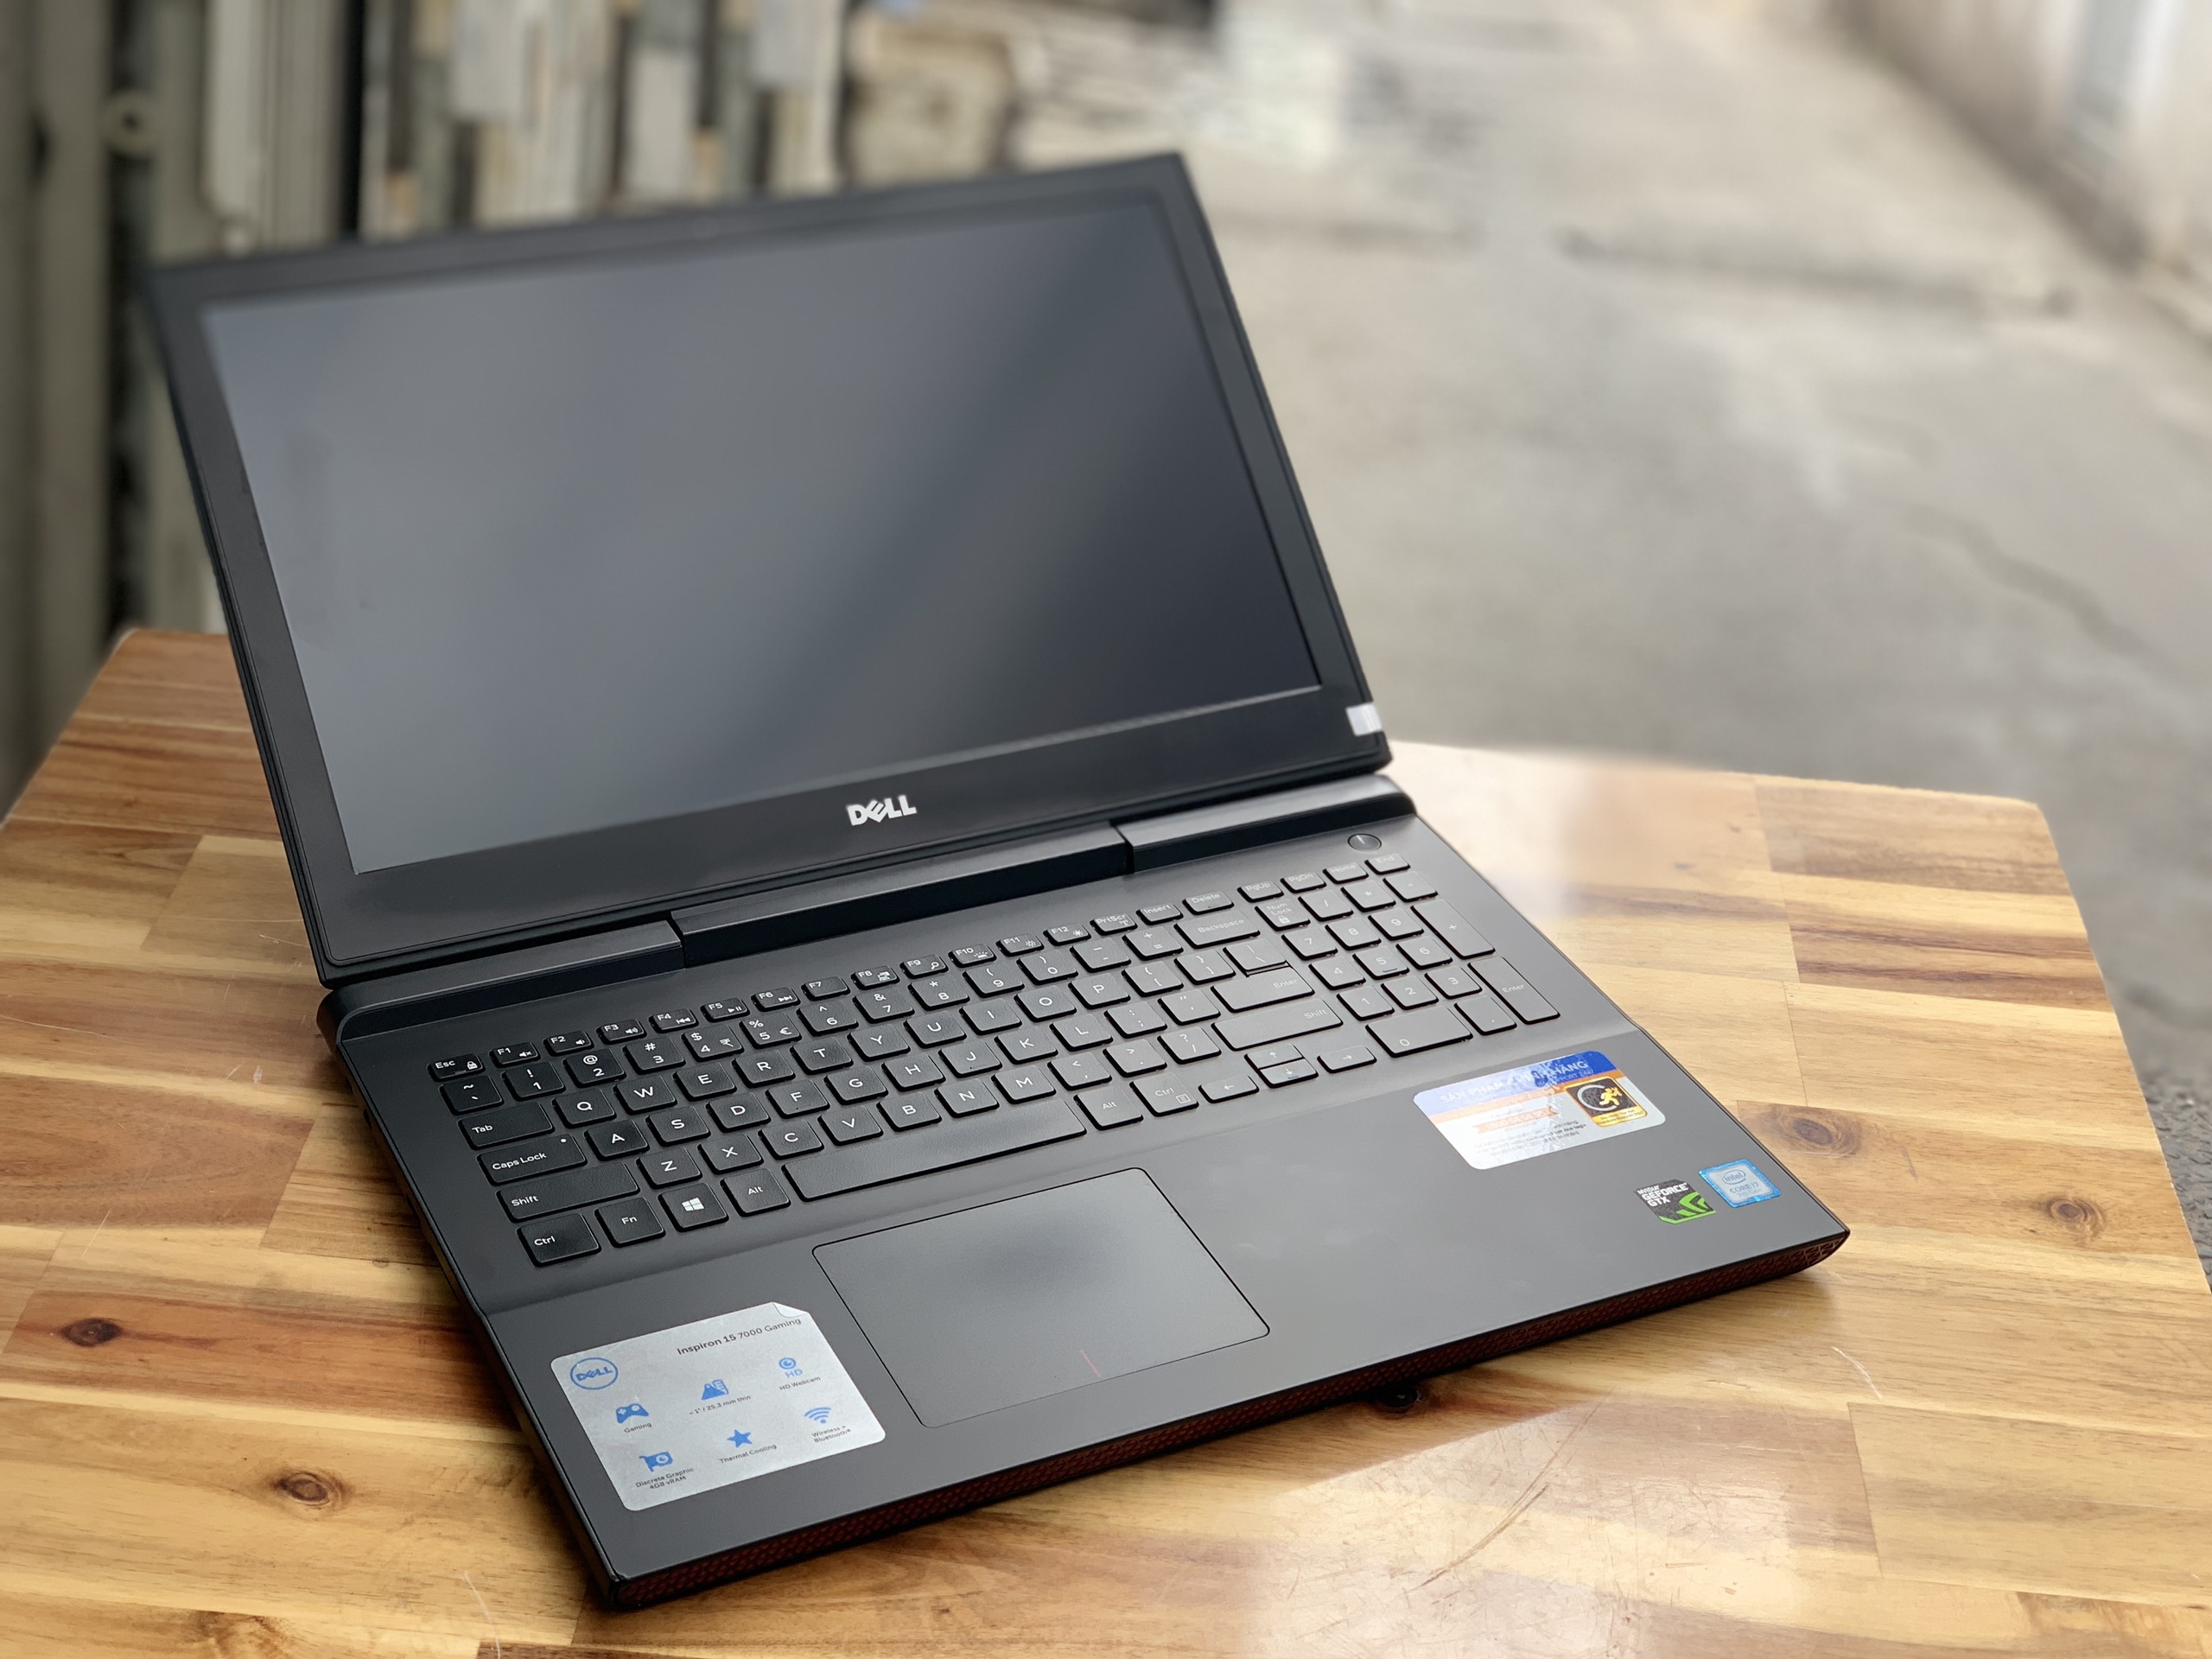 Laptop Dell Gaming 7566, i7 6700HQ 8G SSD128+500G Vga GTX960M 4G FULL HD Đèn phím Đẹp zin 100% Giá rẻ4